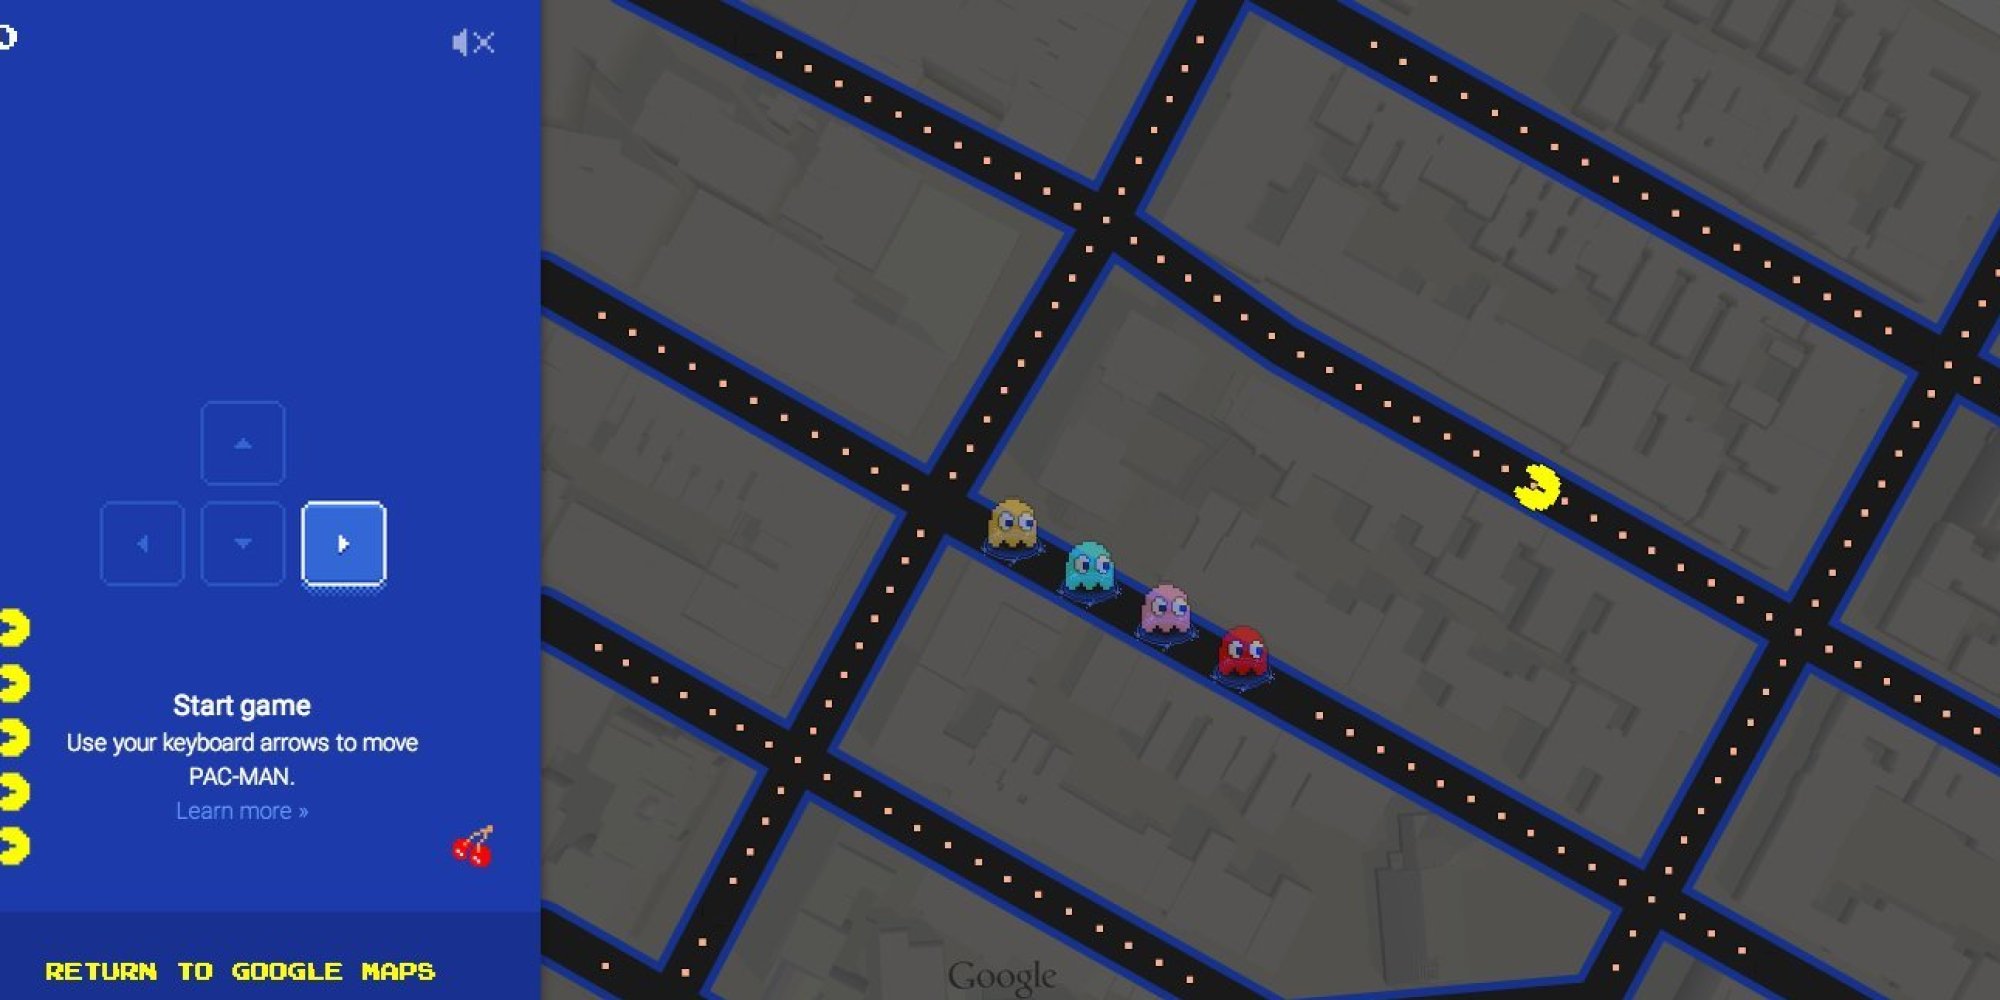 Thật như đùa, chơi Pac-man trên Google Maps